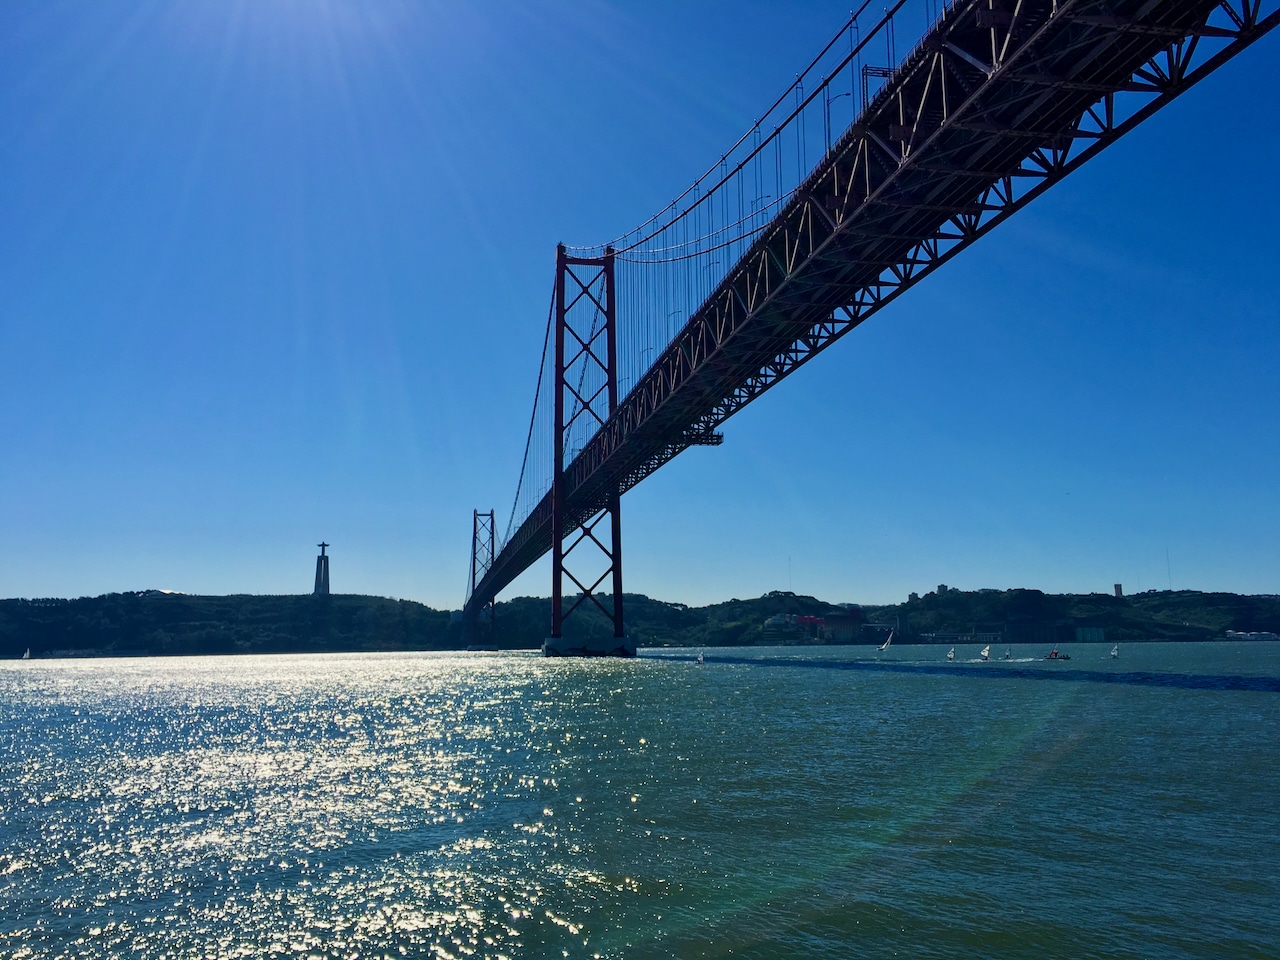 Beeindruckend – die Vasco-da-Gama-Brücke (Brücke des 25. April) ist eine riesige Schrägseilbrücke, die verblüffende Ähnlichkeit mit der Golden Gate Bridge in San Francisco hat. Reisebericht Lissabon Erfahrungen Tipps Erfahrungsbericht Portugal